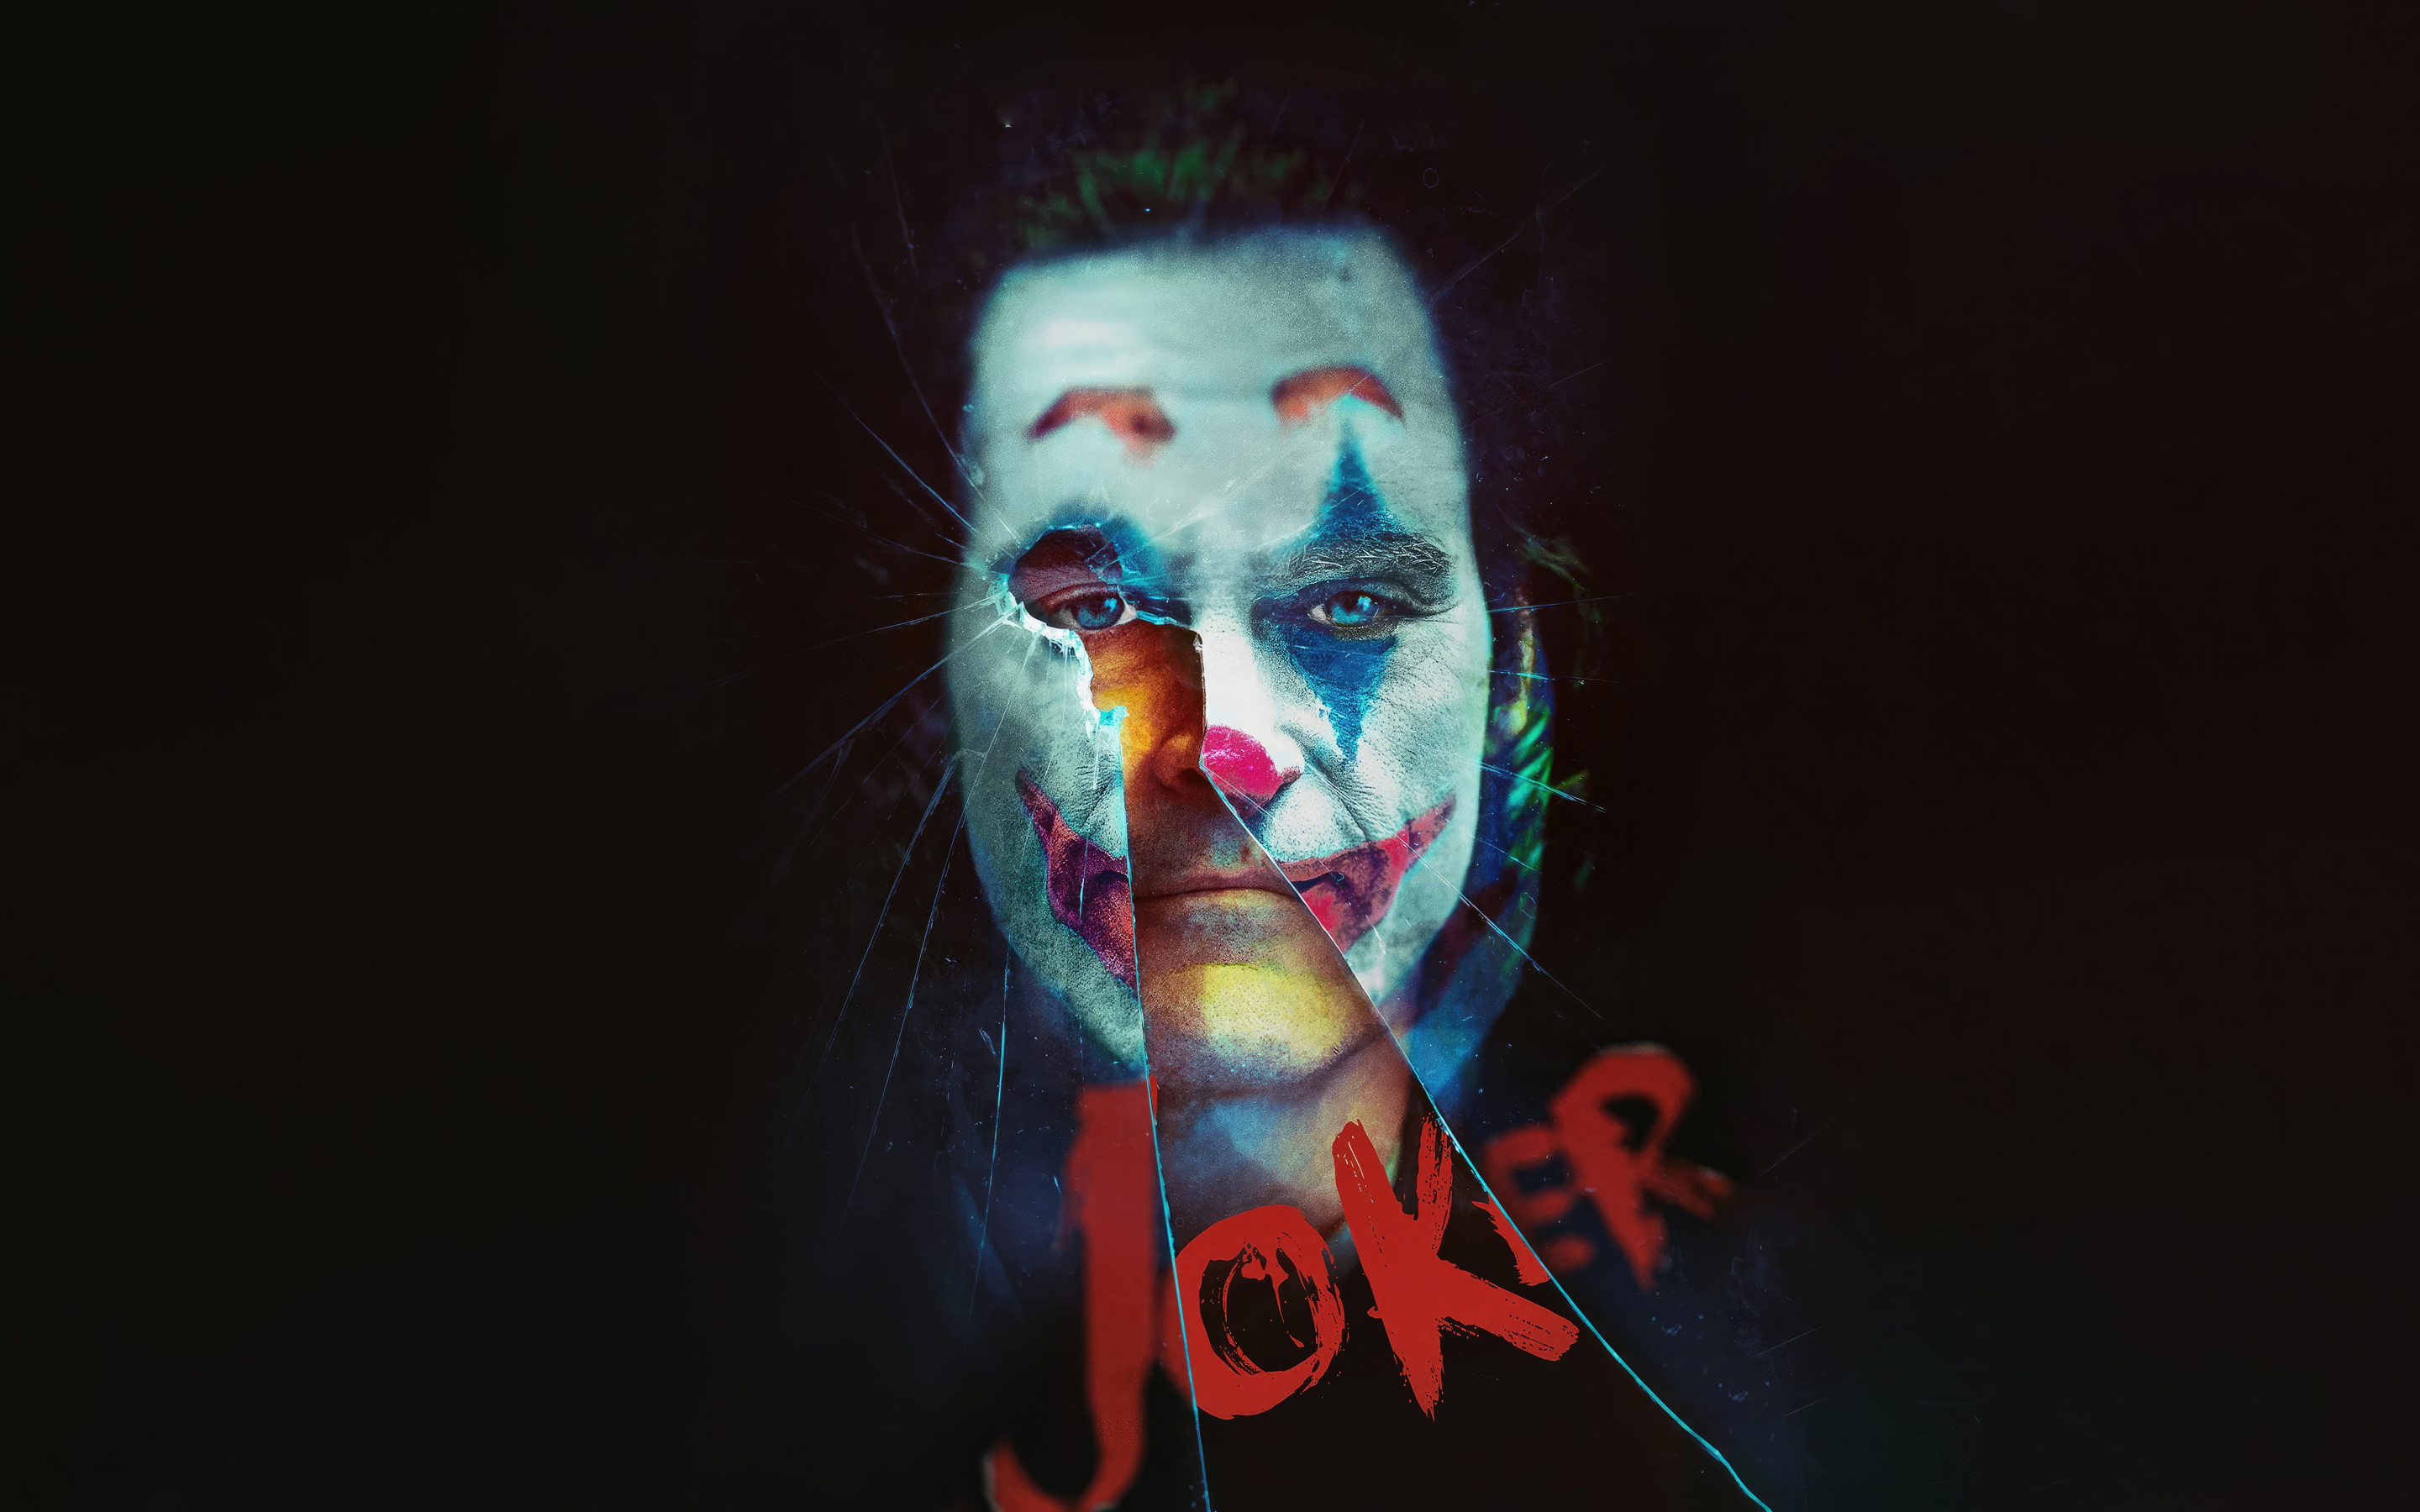 Joker movie, beautiful fan art, 2880x1800 wallpaper